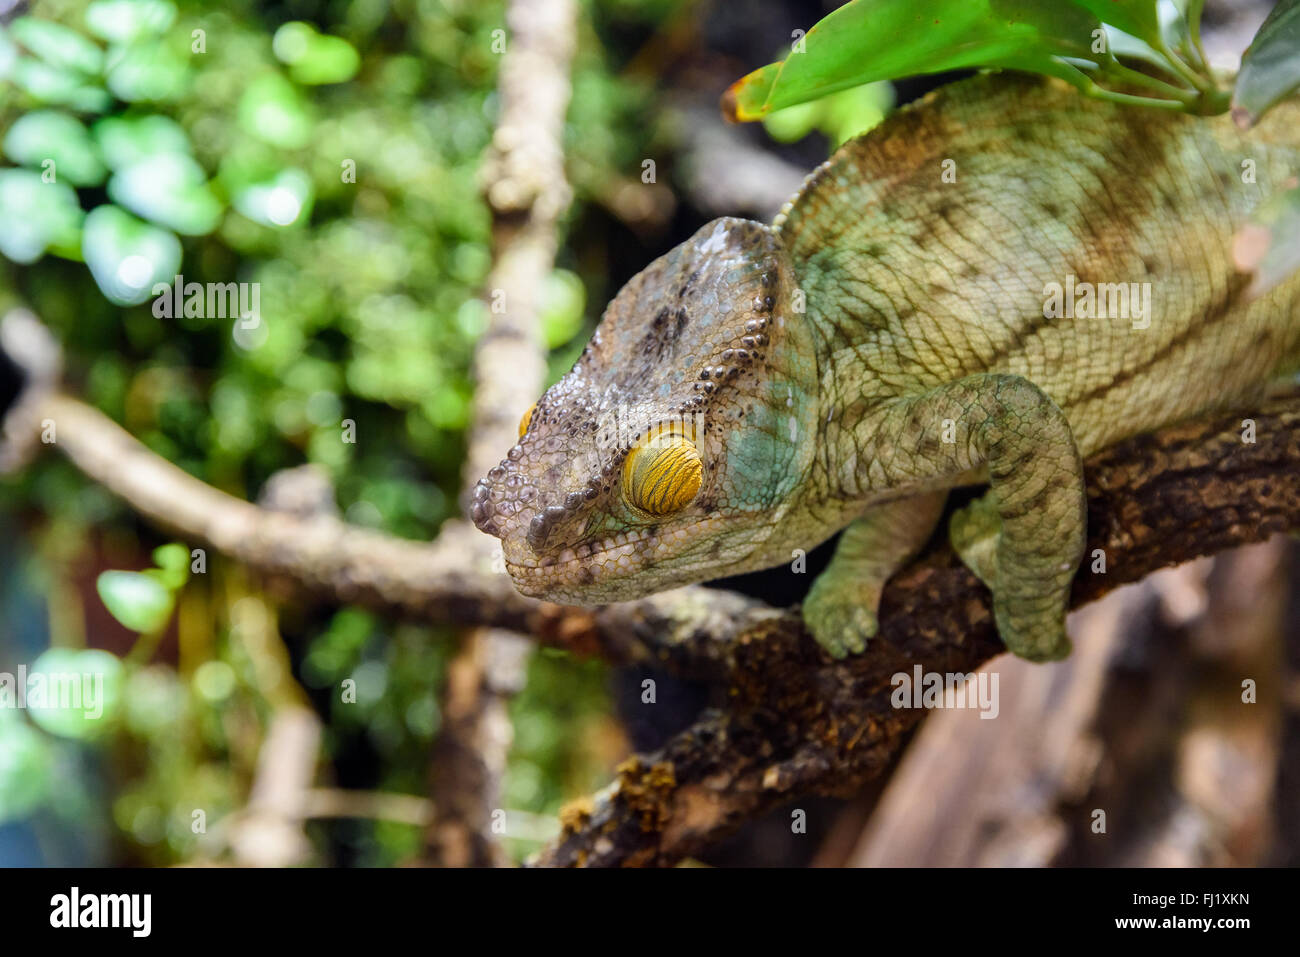 Green Chameleon Lizard On Branch Stock Photo